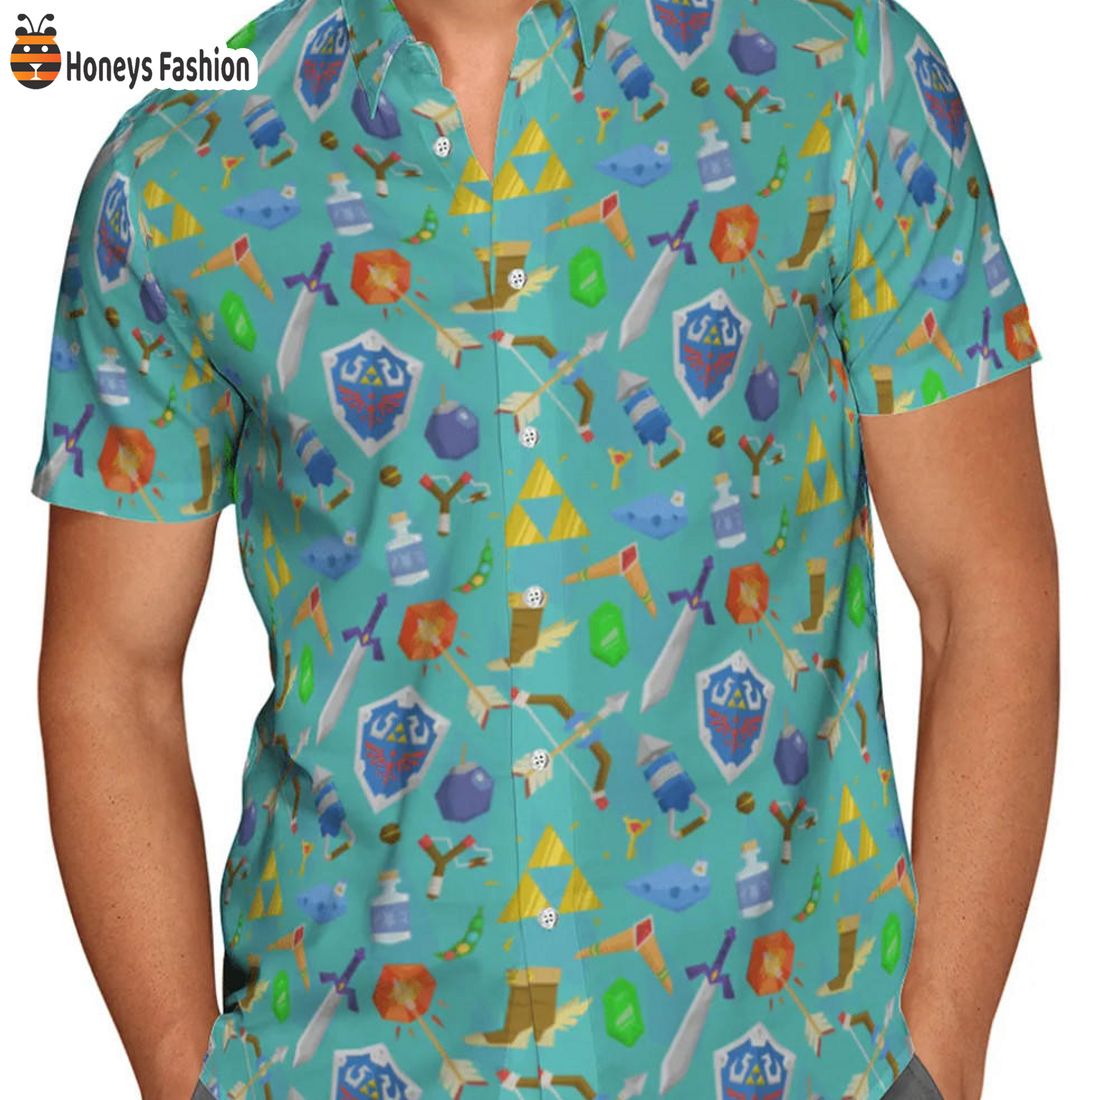 TRENDING Legend of Zelda Game Item Pattern Hawaiian Shirt